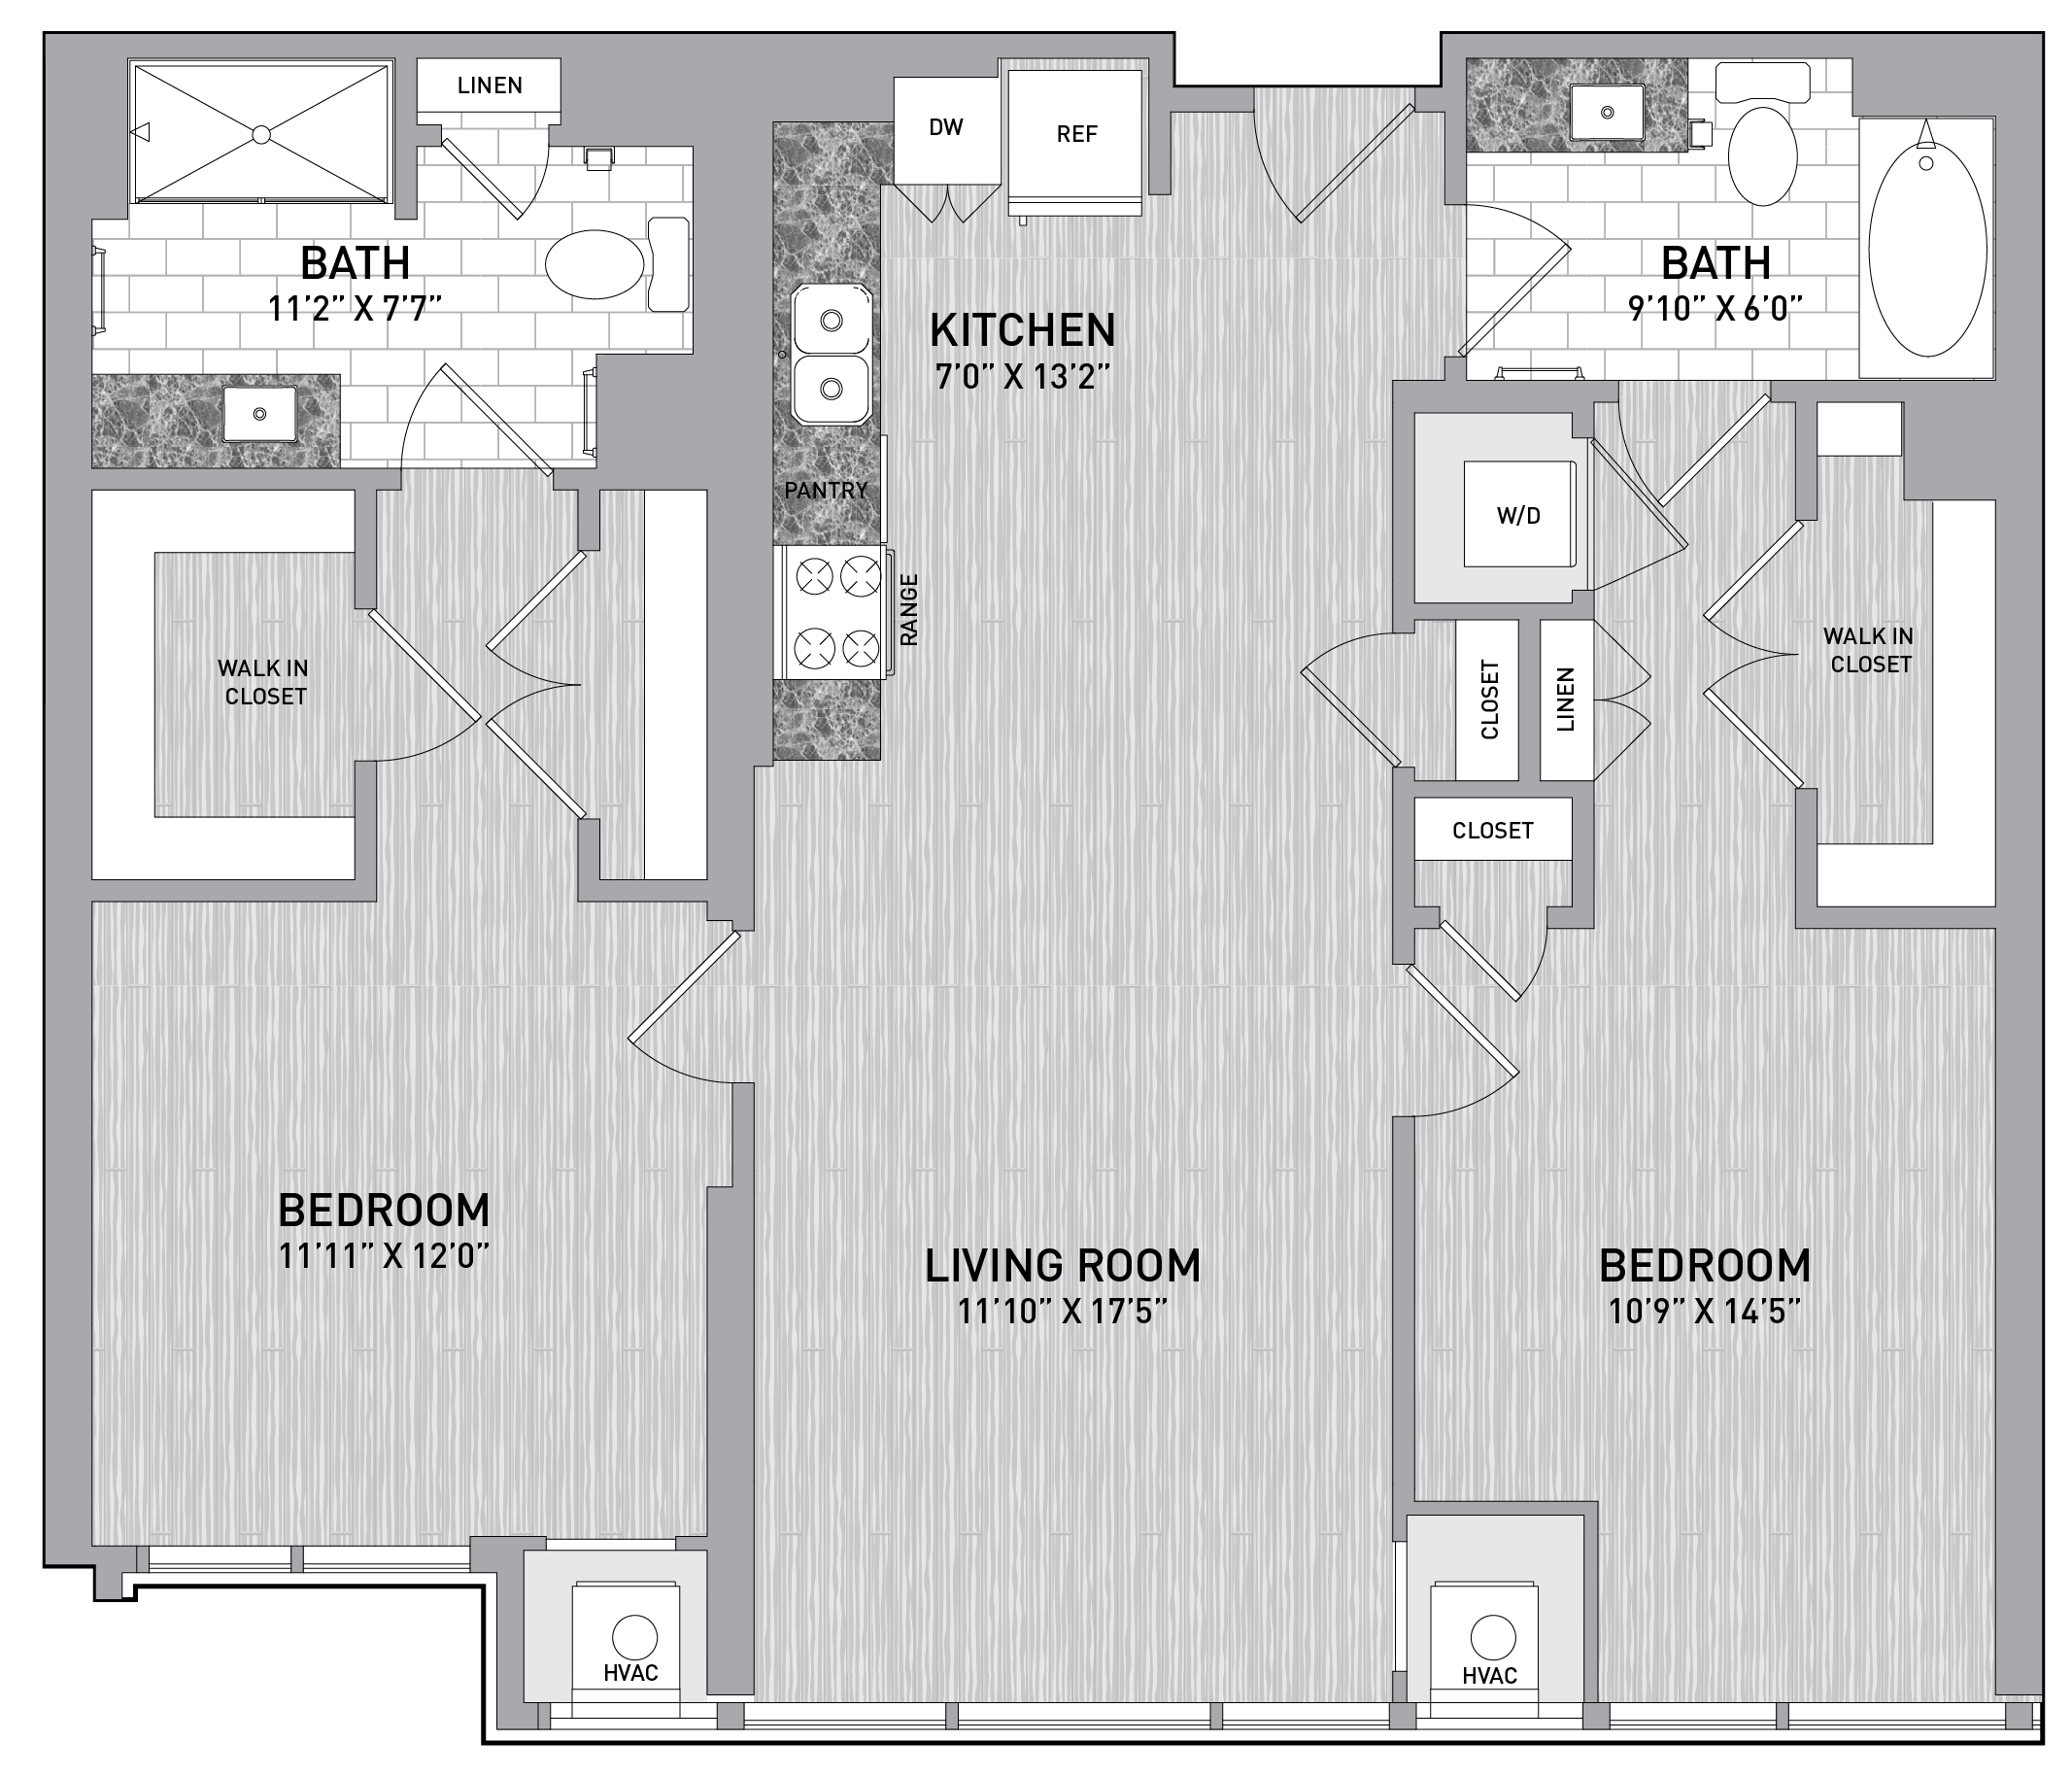 floorplan image of unit id 0318